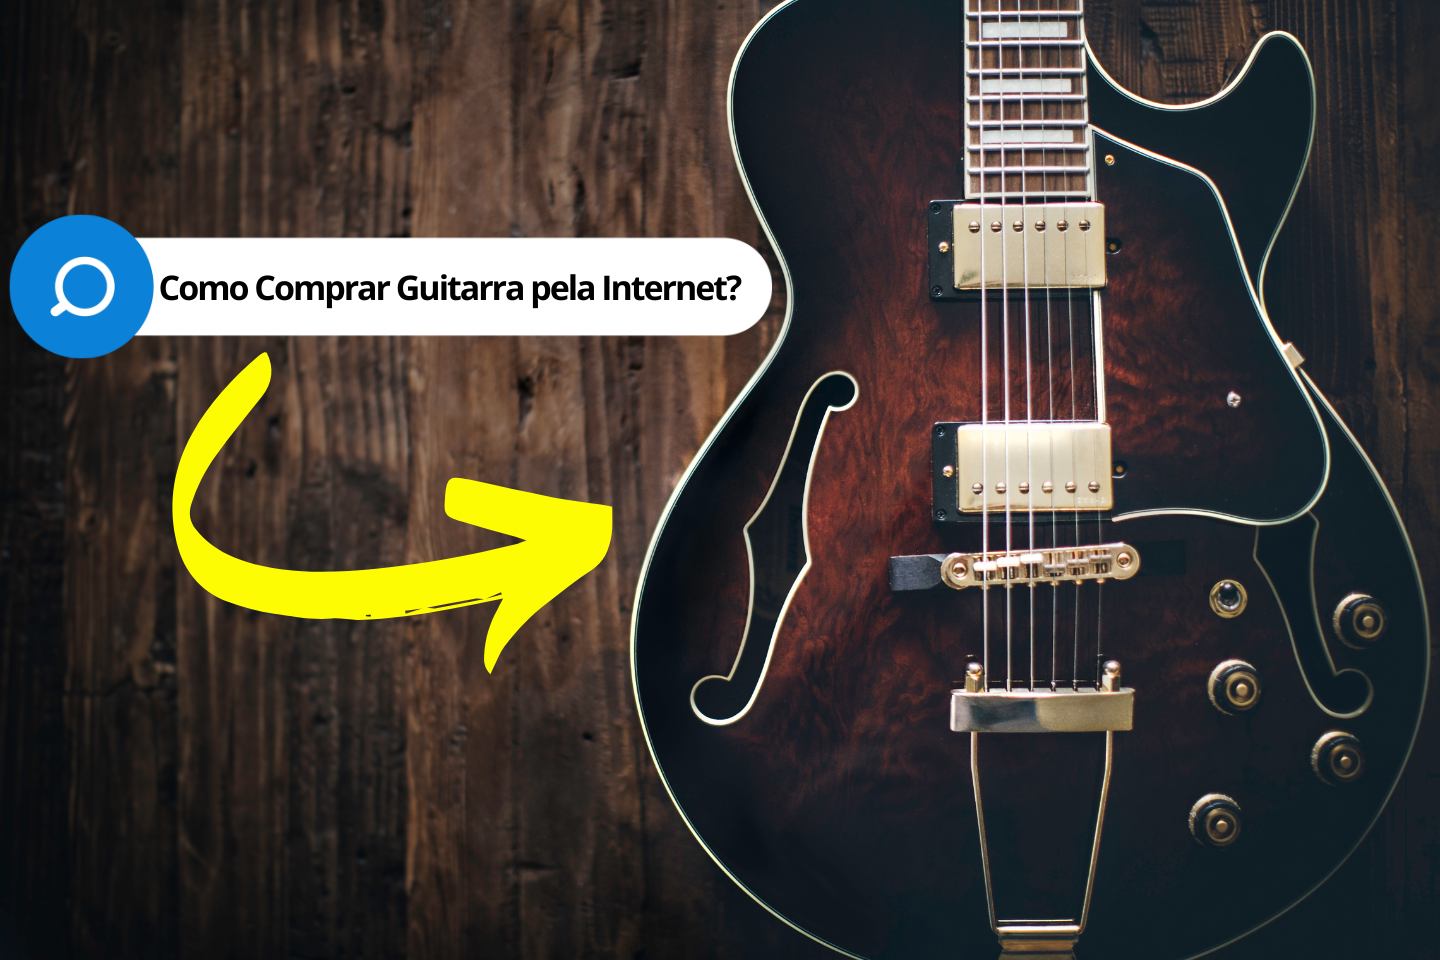 Como Fazer uma Boa Compra de uma Guitarra Nova pela Internet